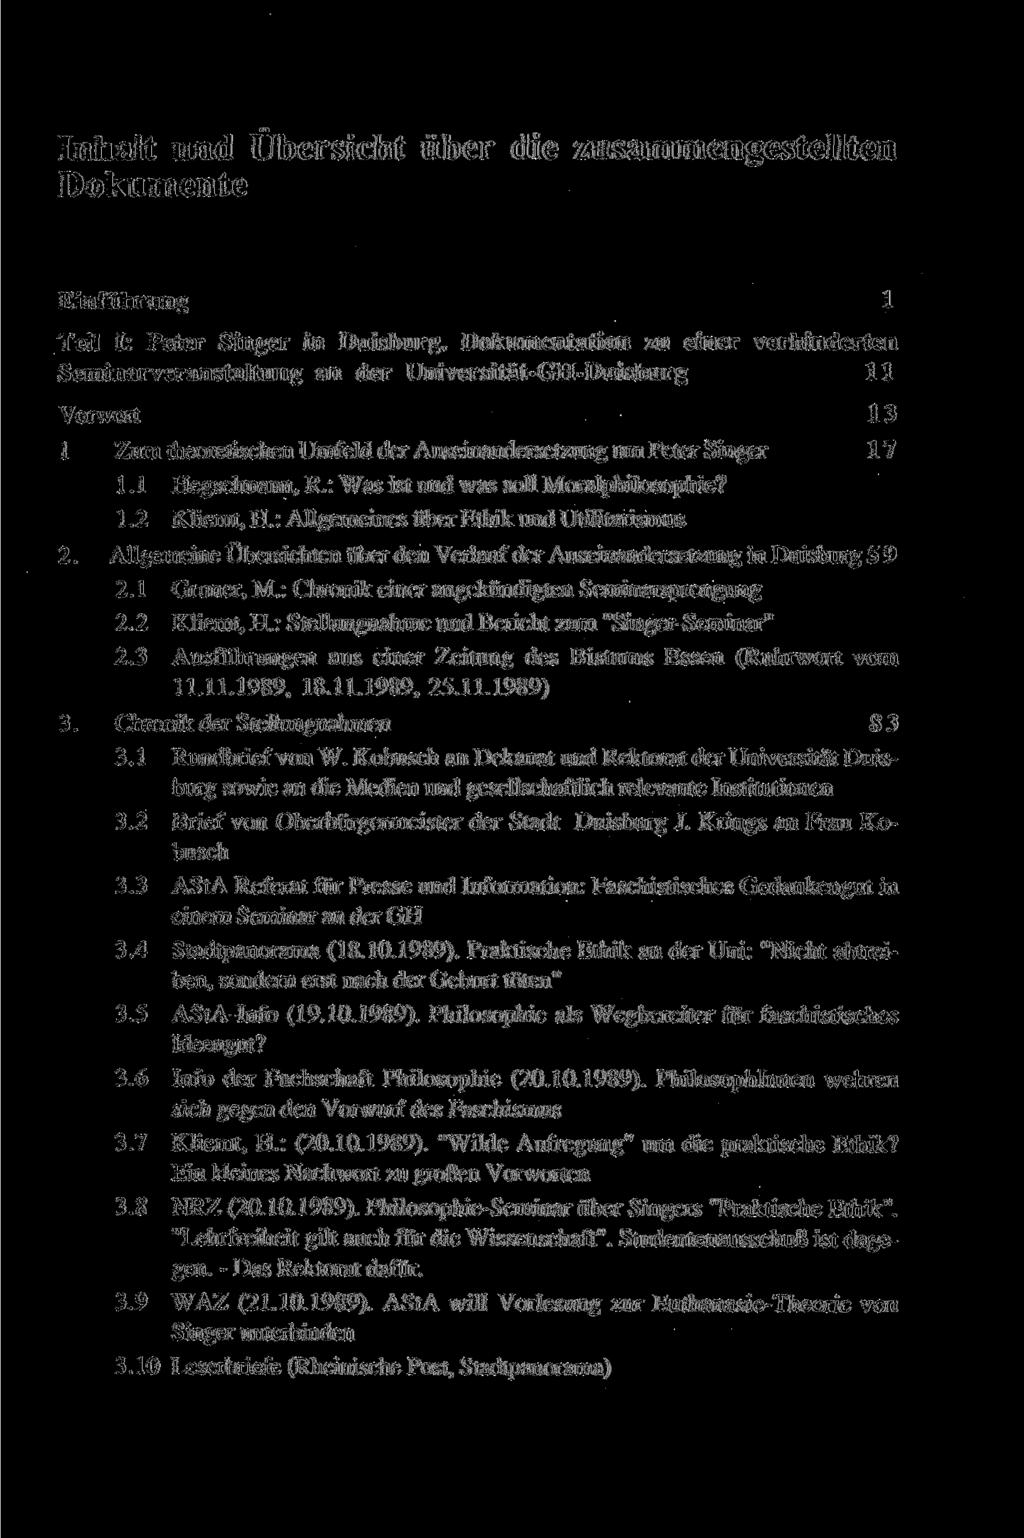 Inhalt und Übersicht über die zusammengestellten Dokumente Einführung 1 Teil I: Peter Singer in Duisburg.